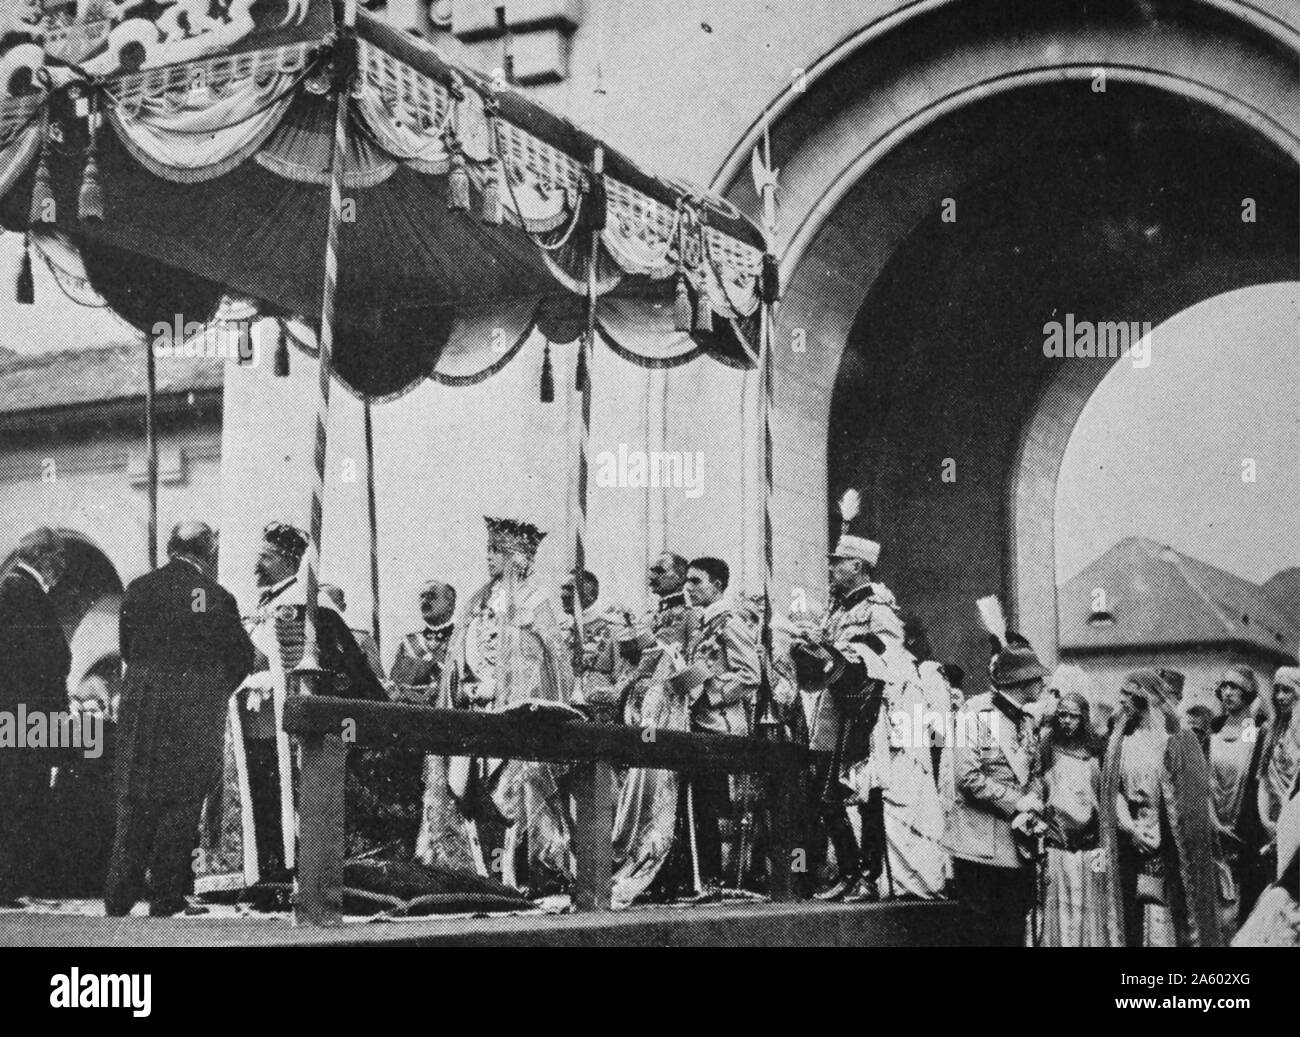 L'incoronazione del Re Ferdinando 1 e la Regina Maria di Romania, nella piccola città di Alba Iulia il 15 ottobre 1922. Owin alla guerra le cerimonie ad stata rinviata dal 1914. Foto Stock